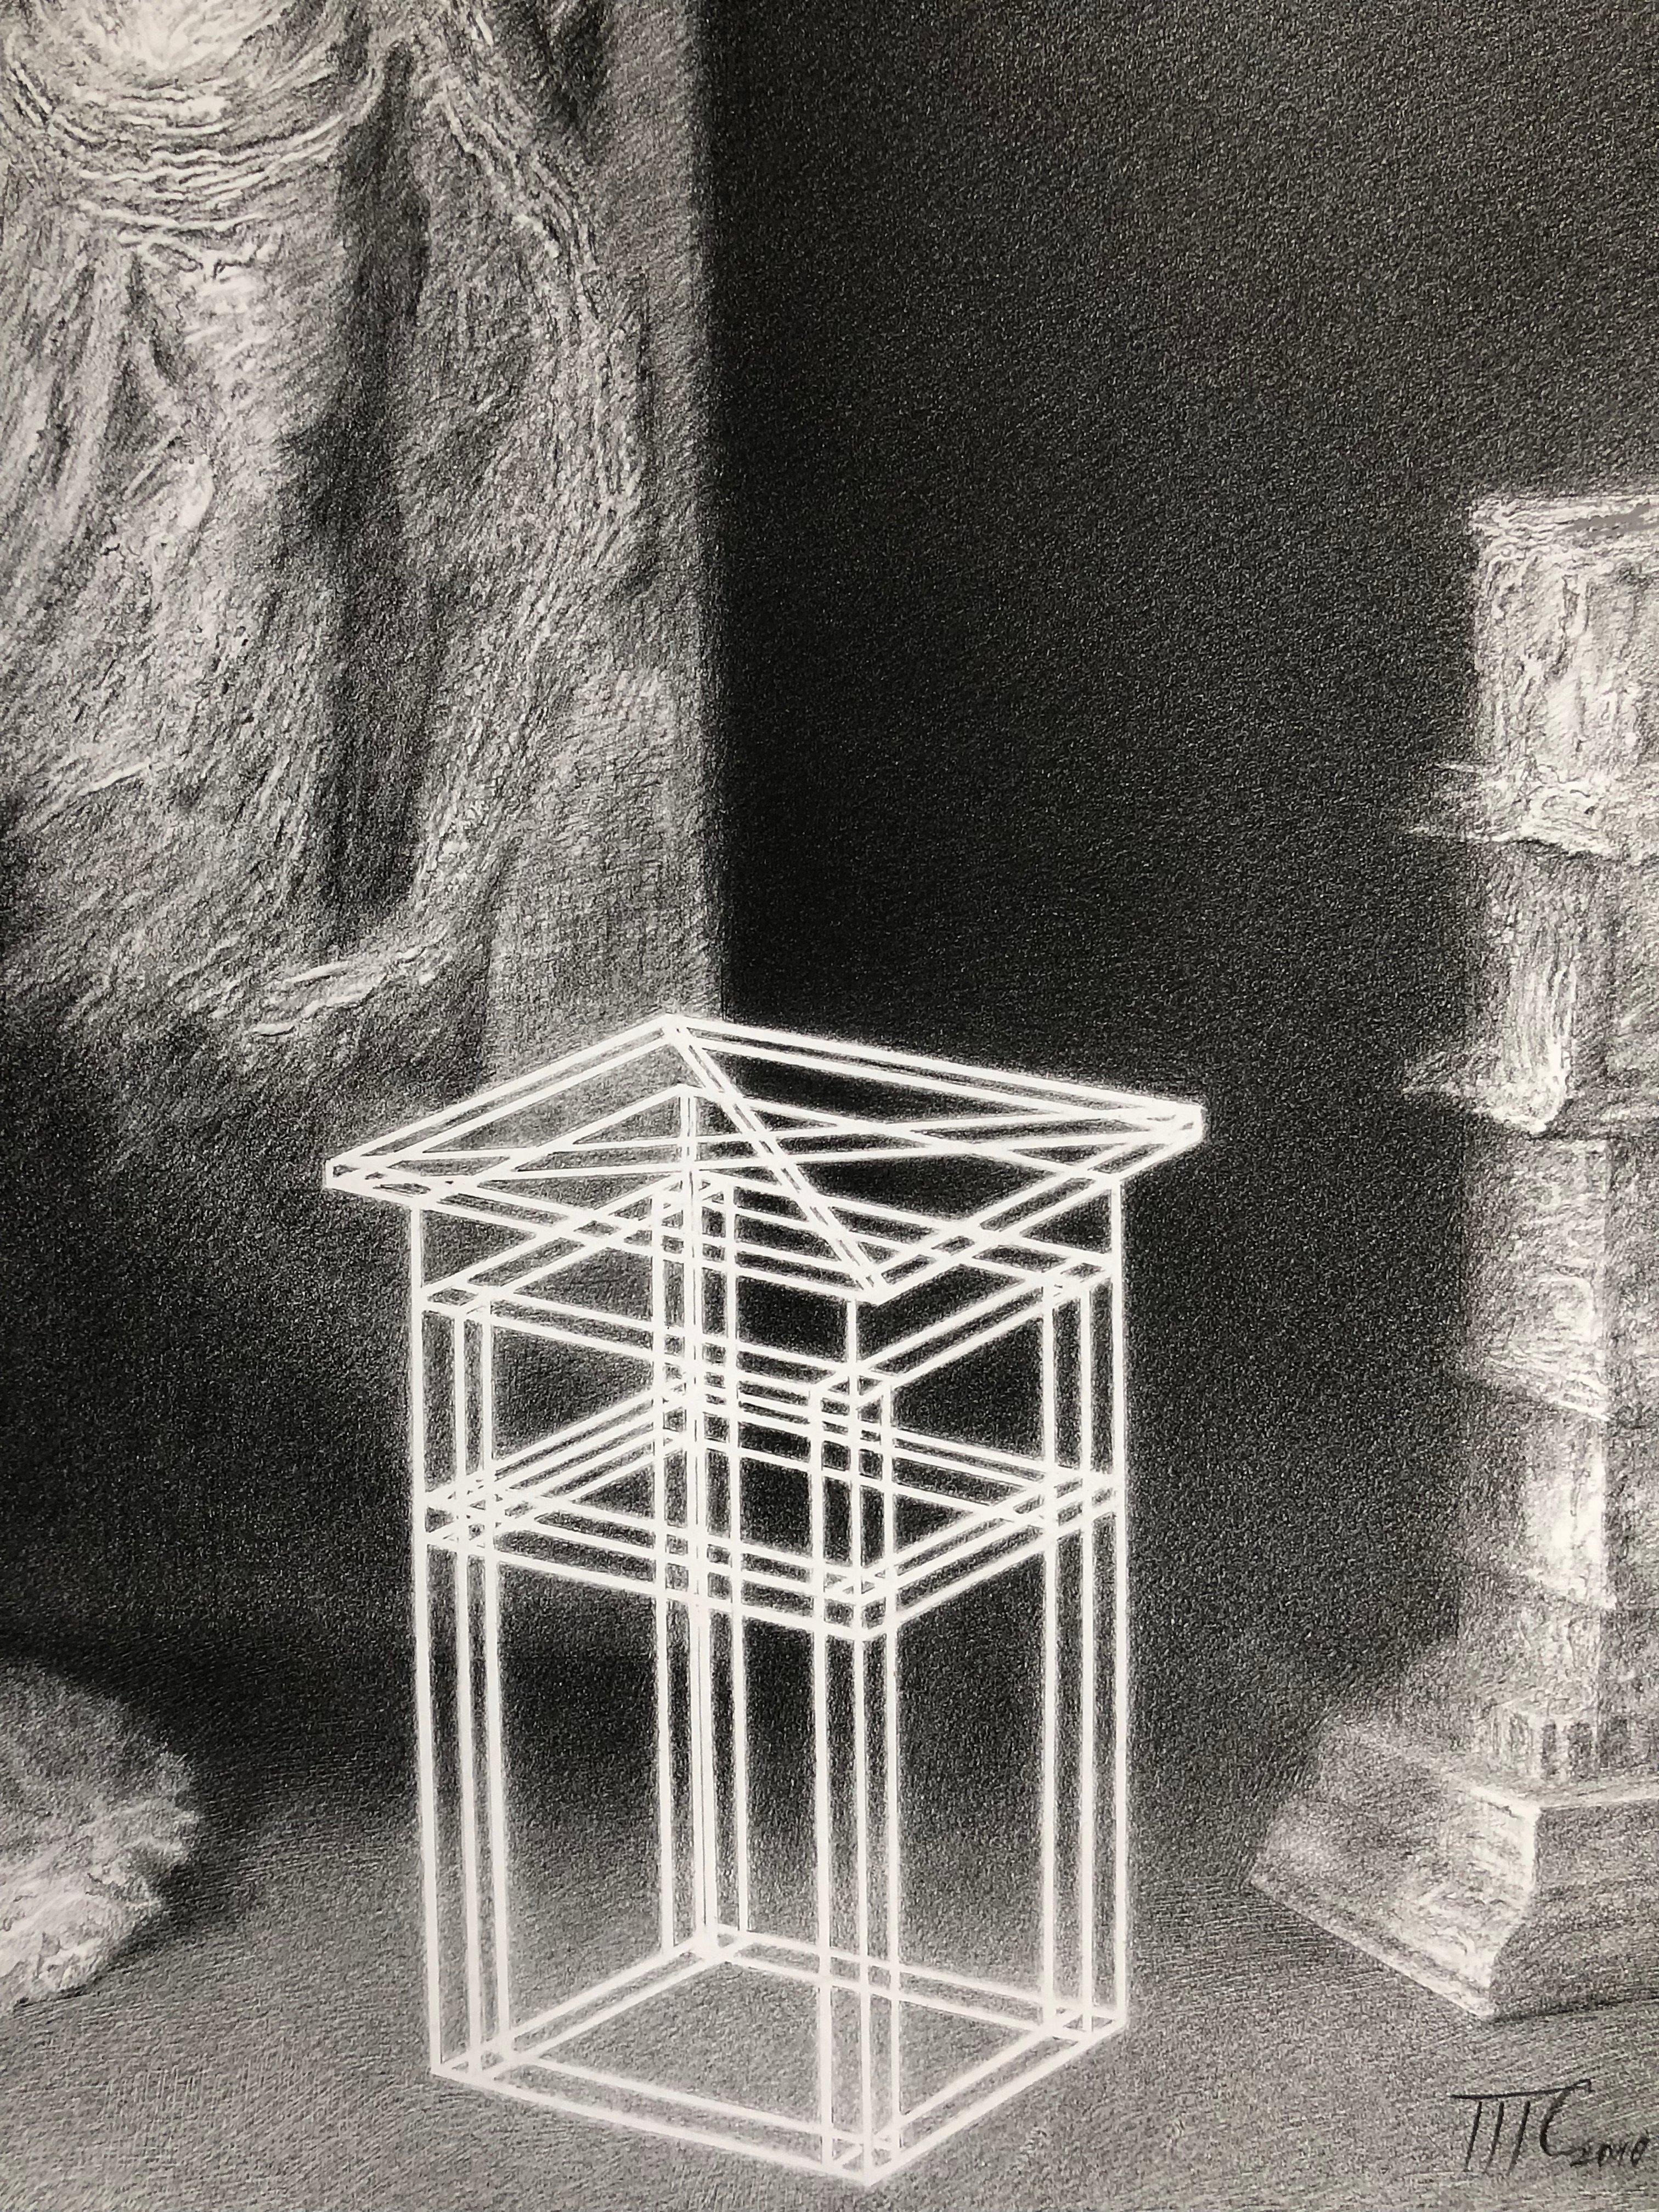 Canon (impression de fac-similé en noir et blanc) - Conceptuel Print par Timofey Smirnov